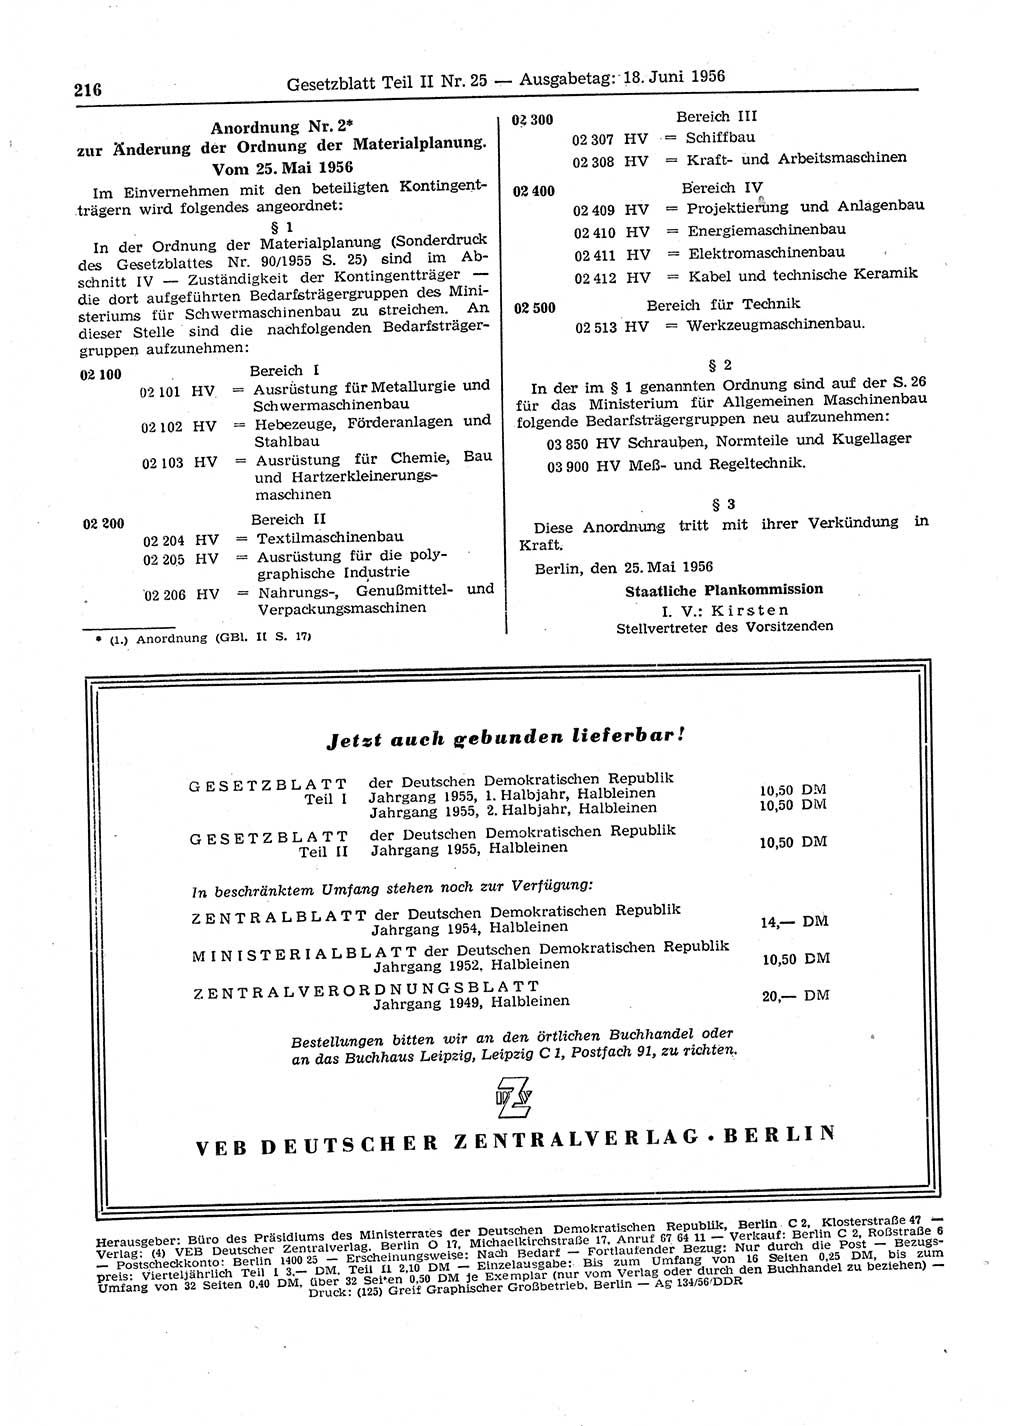 Gesetzblatt (GBl.) der Deutschen Demokratischen Republik (DDR) Teil ⅠⅠ 1956, Seite 216 (GBl. DDR ⅠⅠ 1956, S. 216)